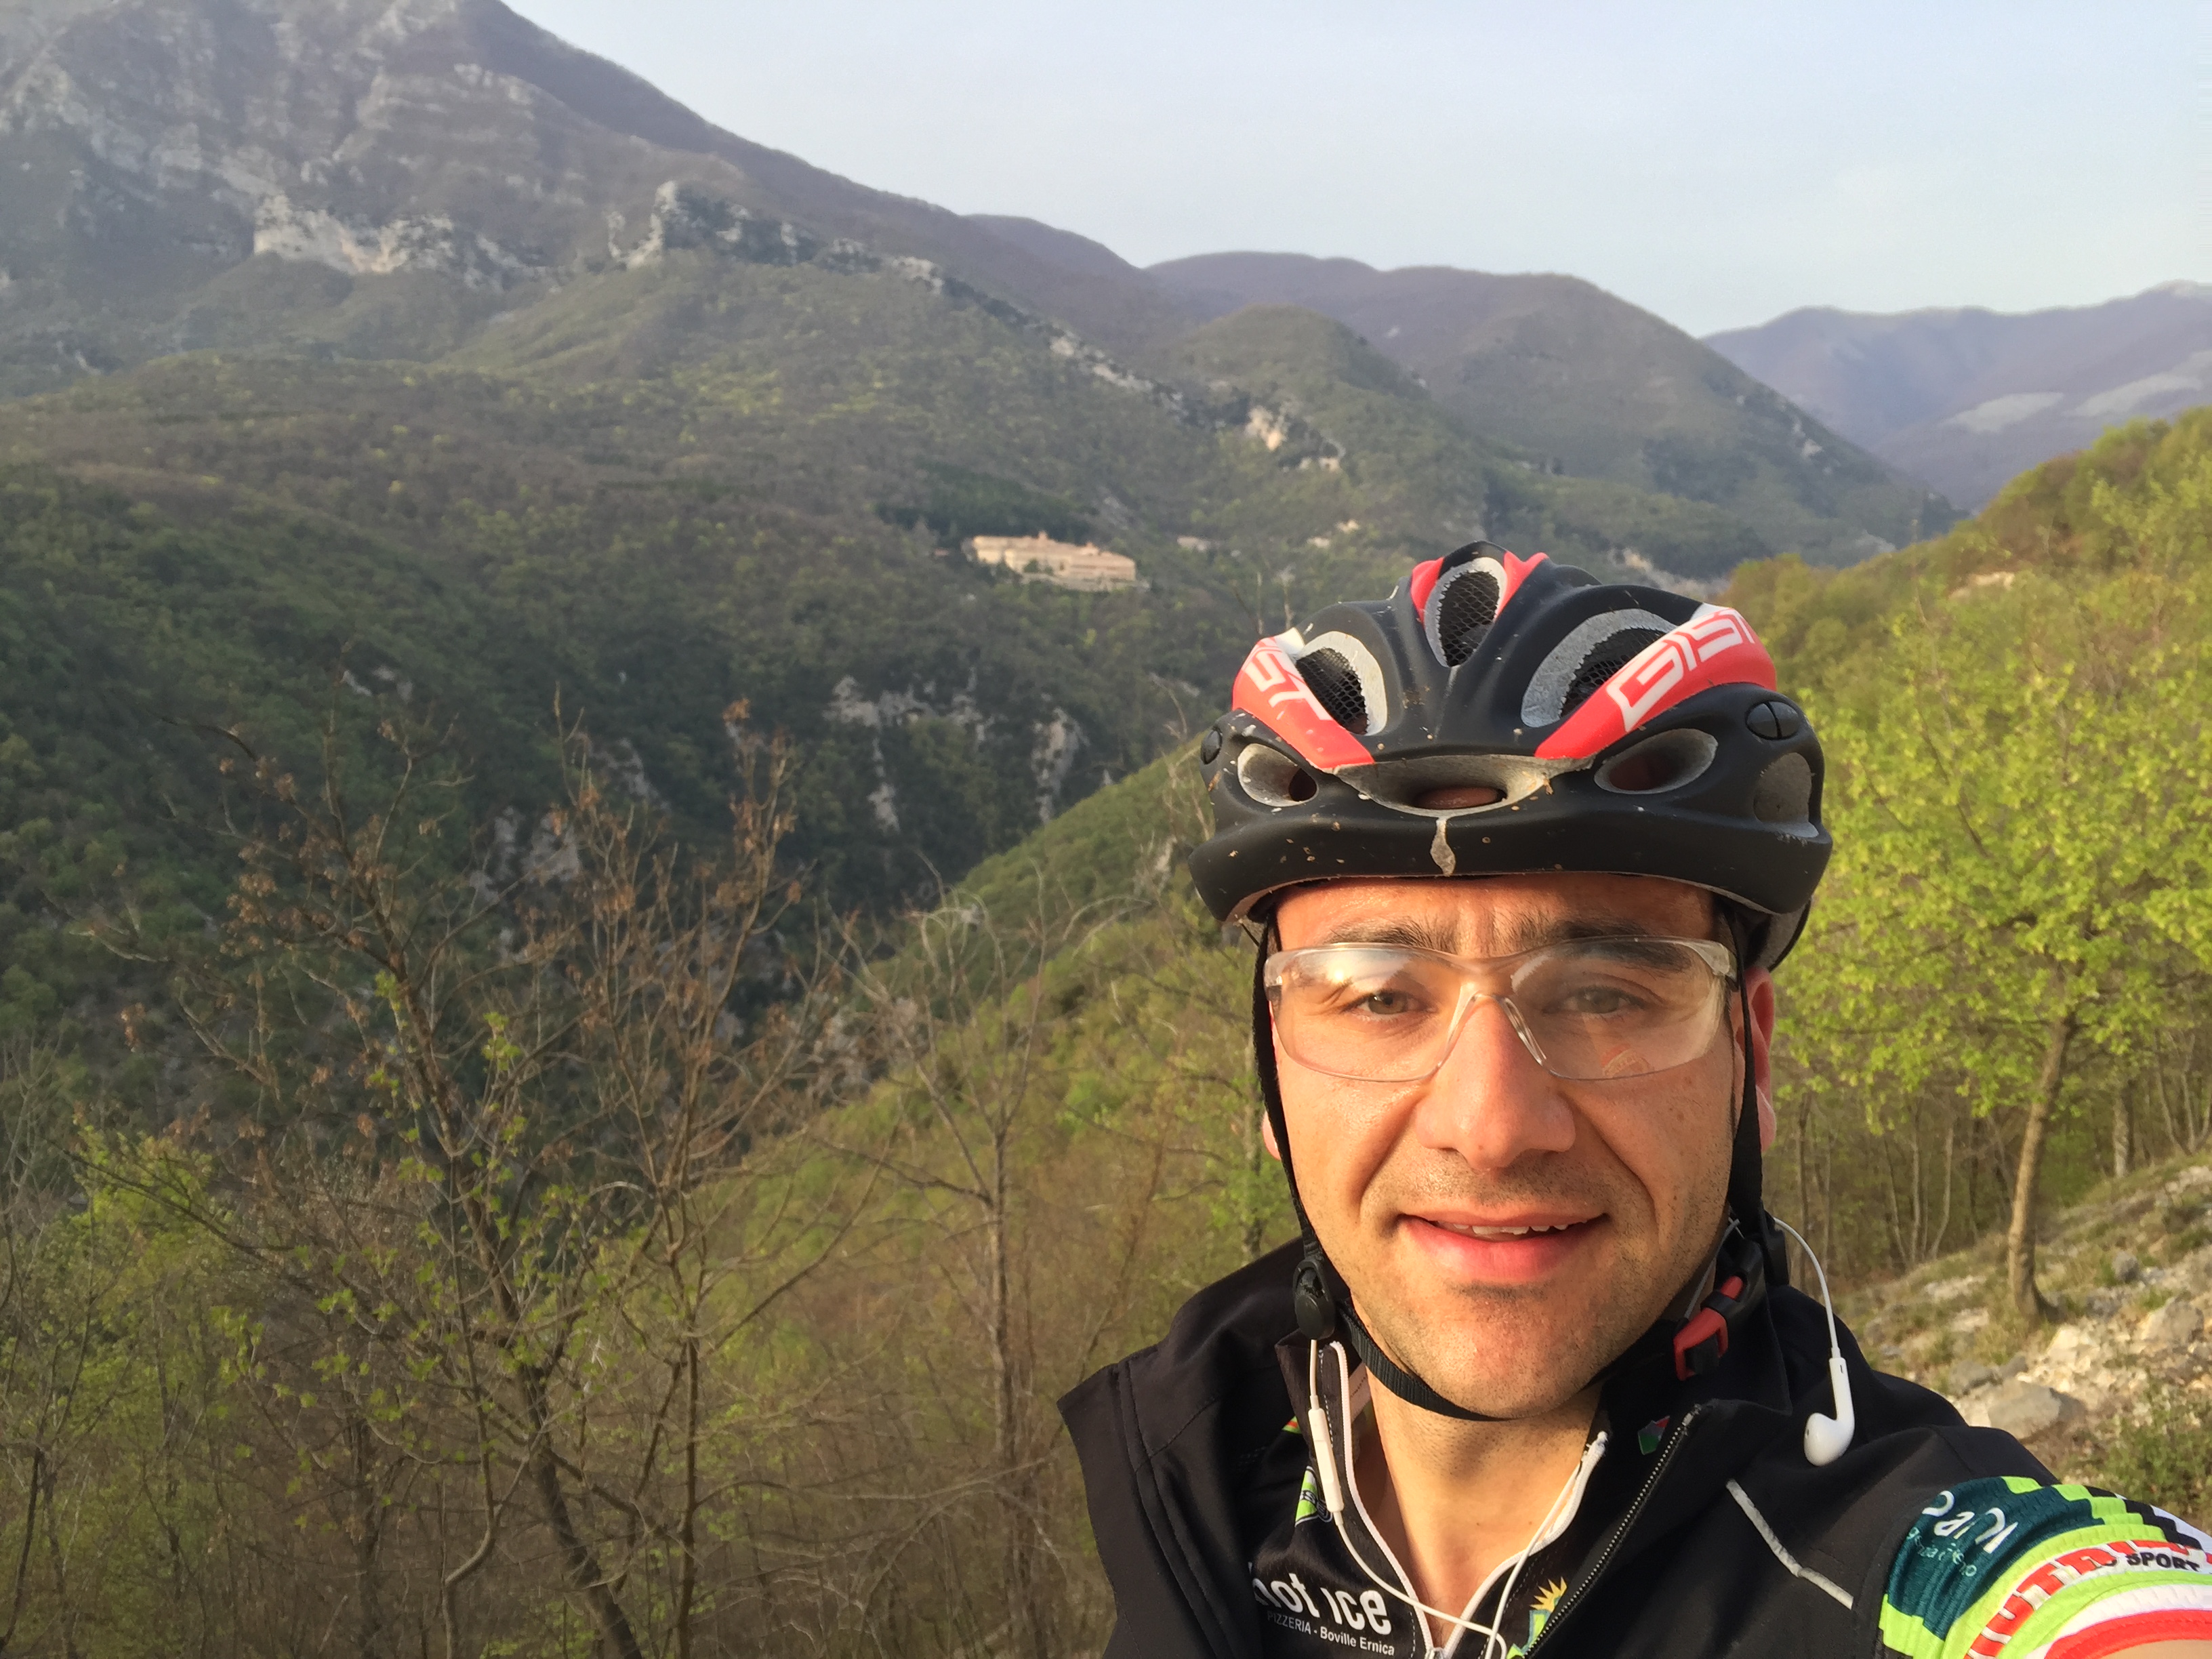 cicloguida Francesco Cianfrocca